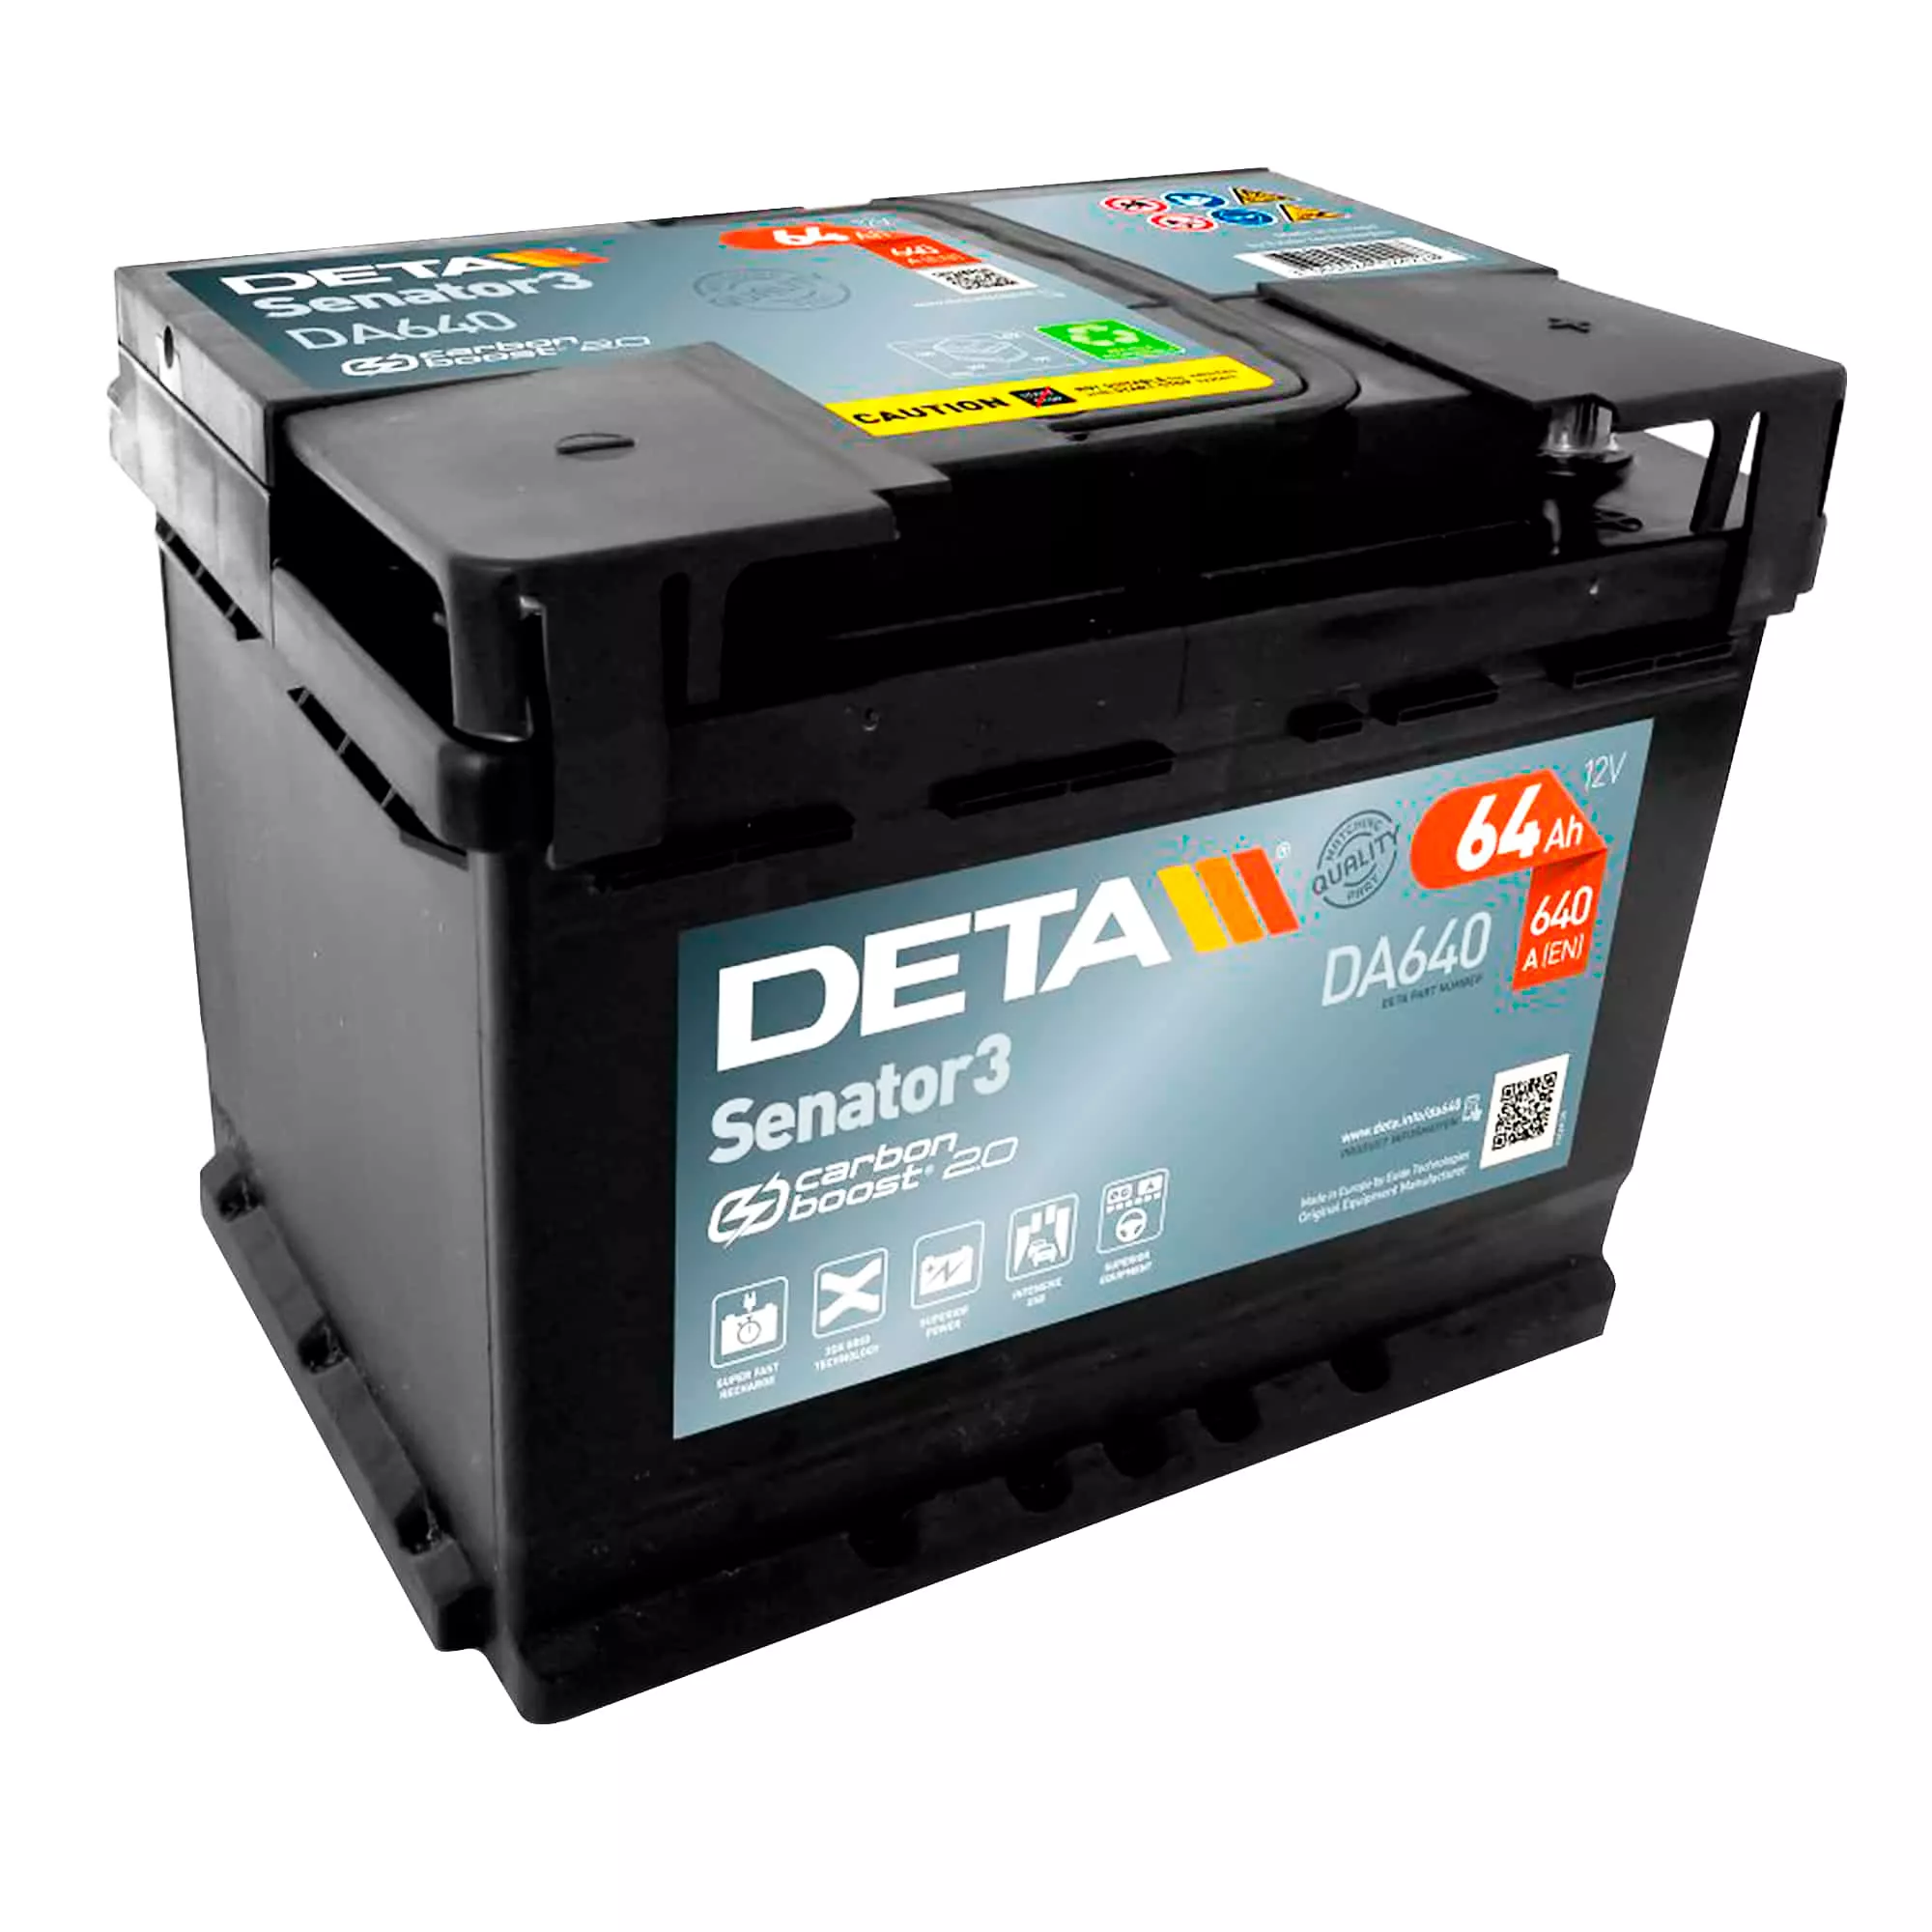 Автомобільний акумулятор DETA 6CT-64Ah АзЕ Senator 3 (DA640)